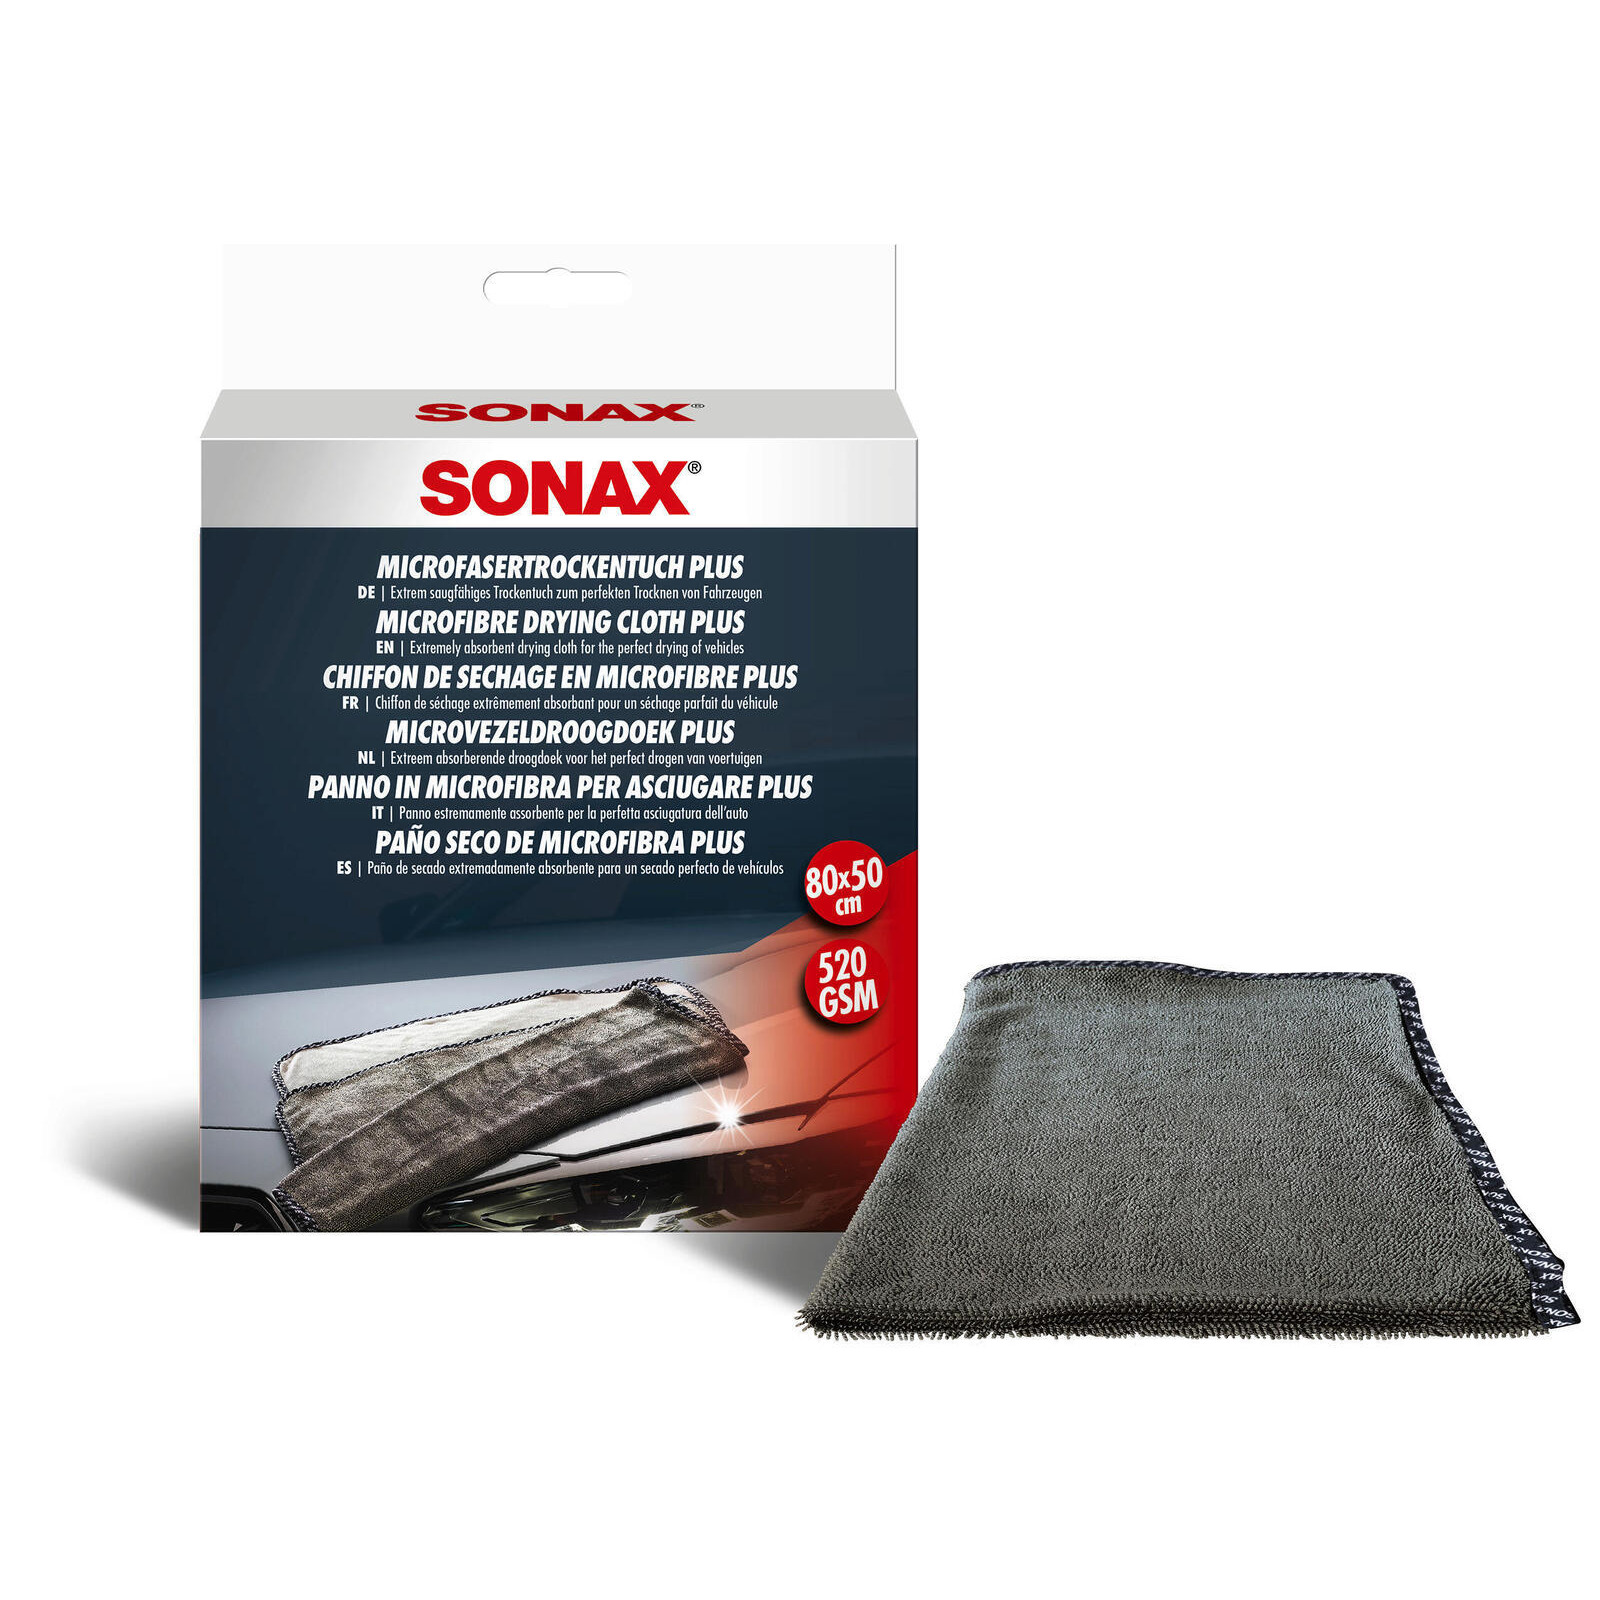 SONAX Reinigungstücher MicrofaserTrockenTuch Plus